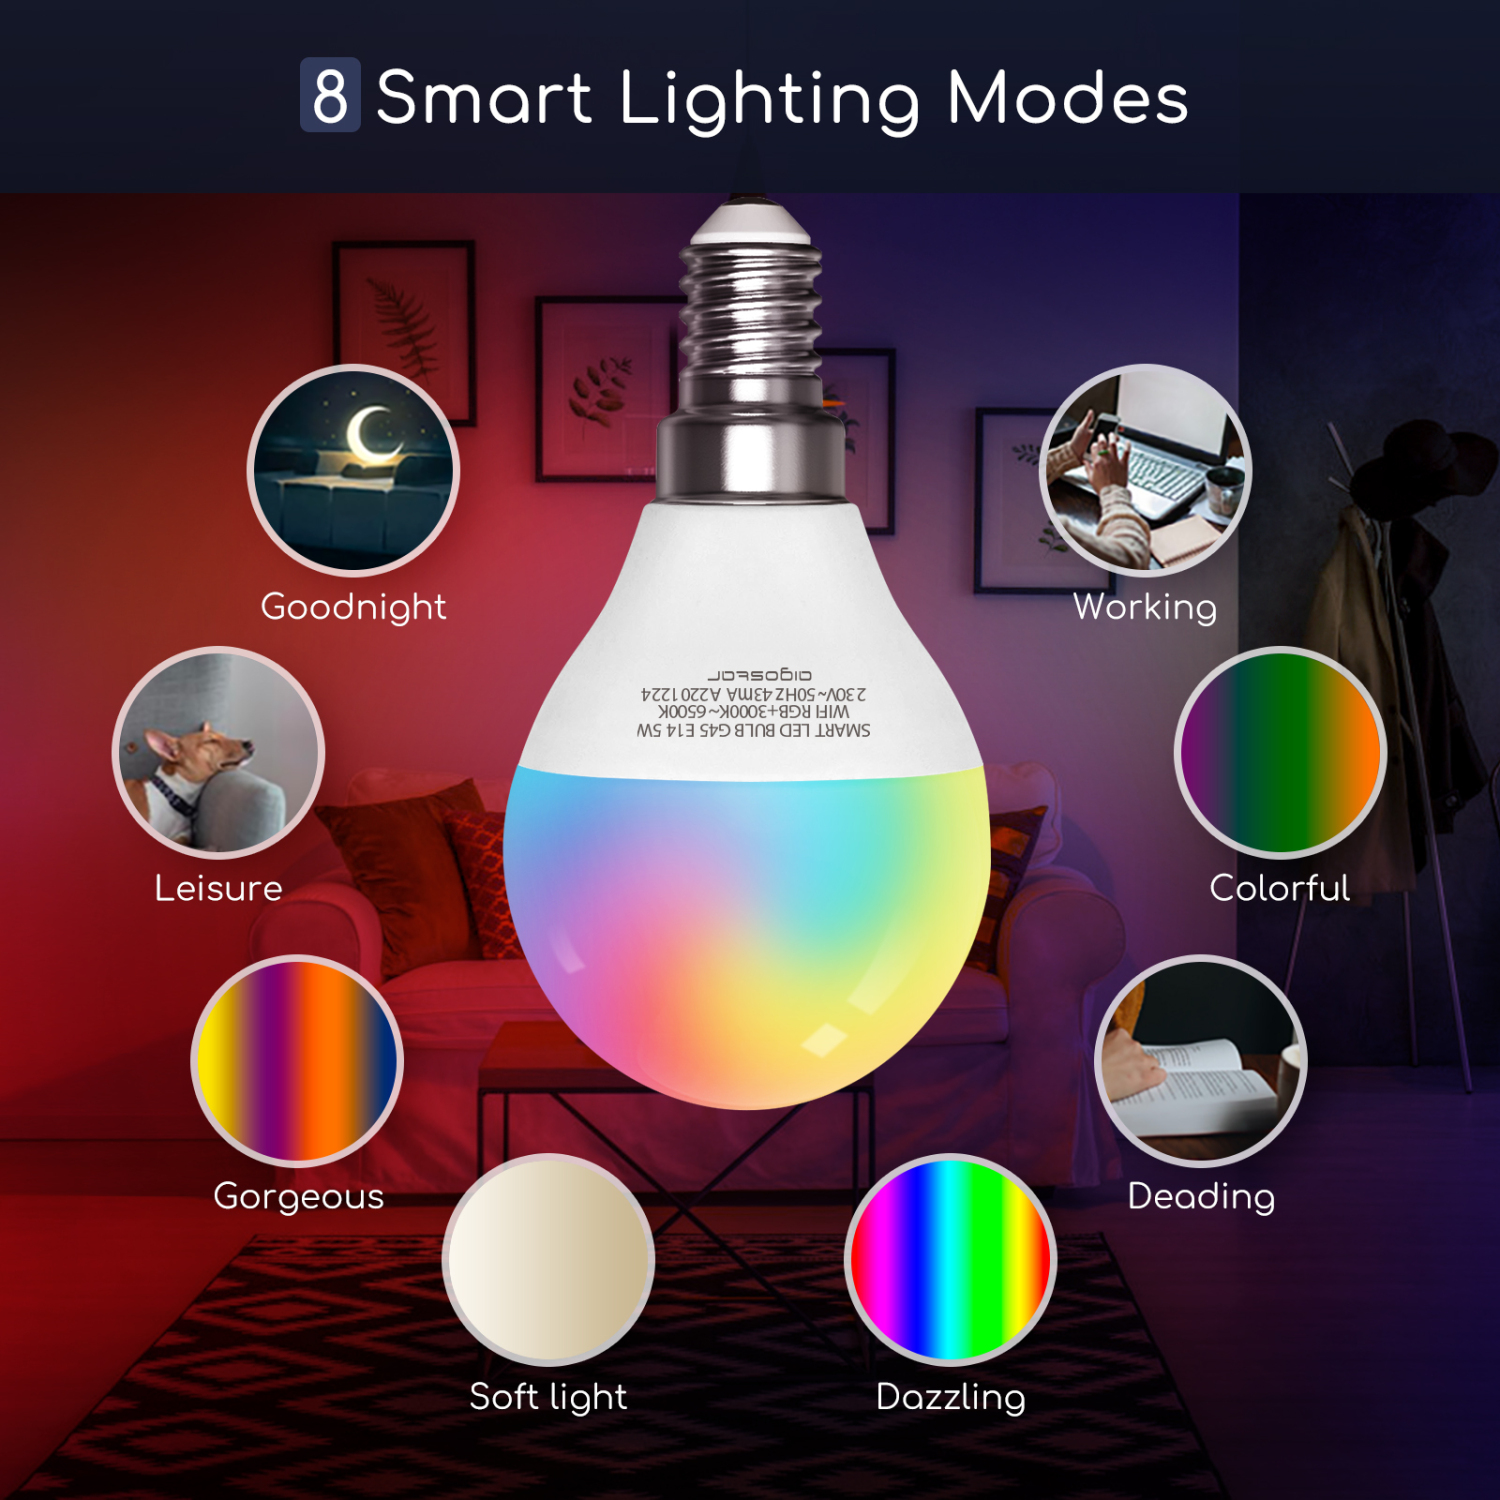 Aigostar - lampadina led smart G45 E14 attacco piccolo 5W, Funziona con Alexa e Google Home. Dimmerabile bianca 3000k - 6500k o RGB multicolore [Classe energetica A +]